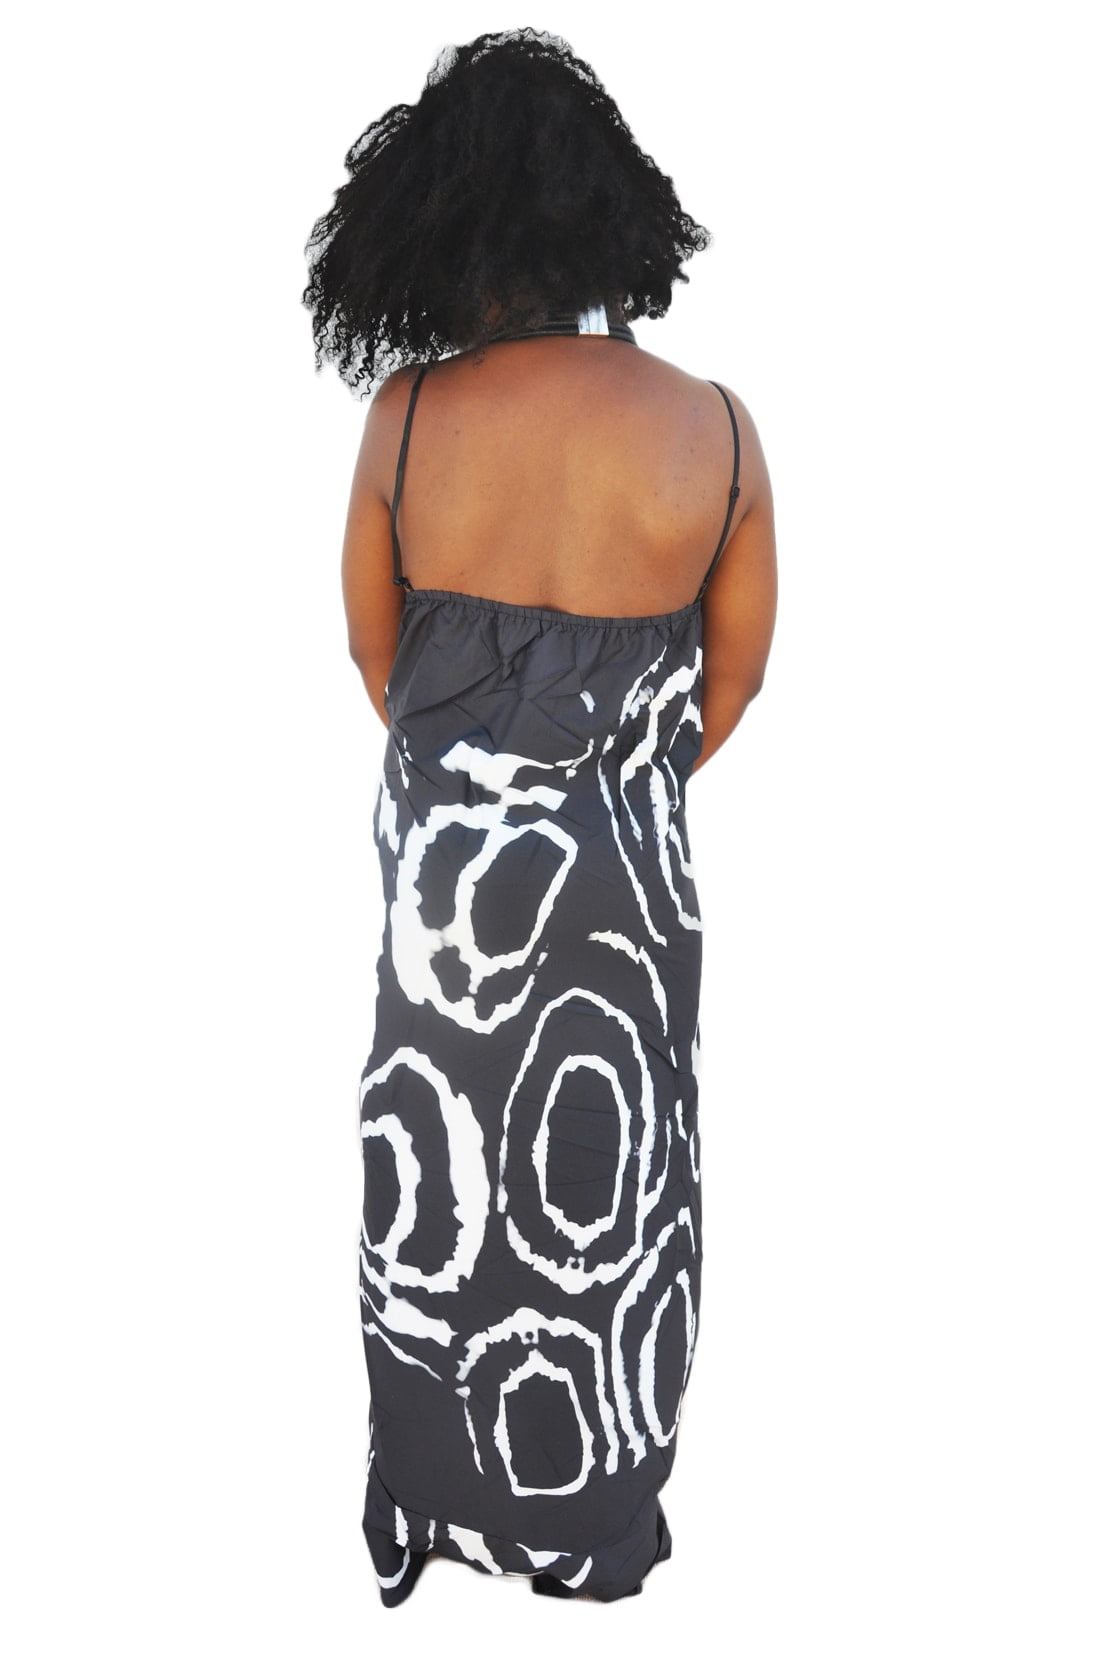 M0165 blackwhite3 High Low Dresses maureens.com boutique